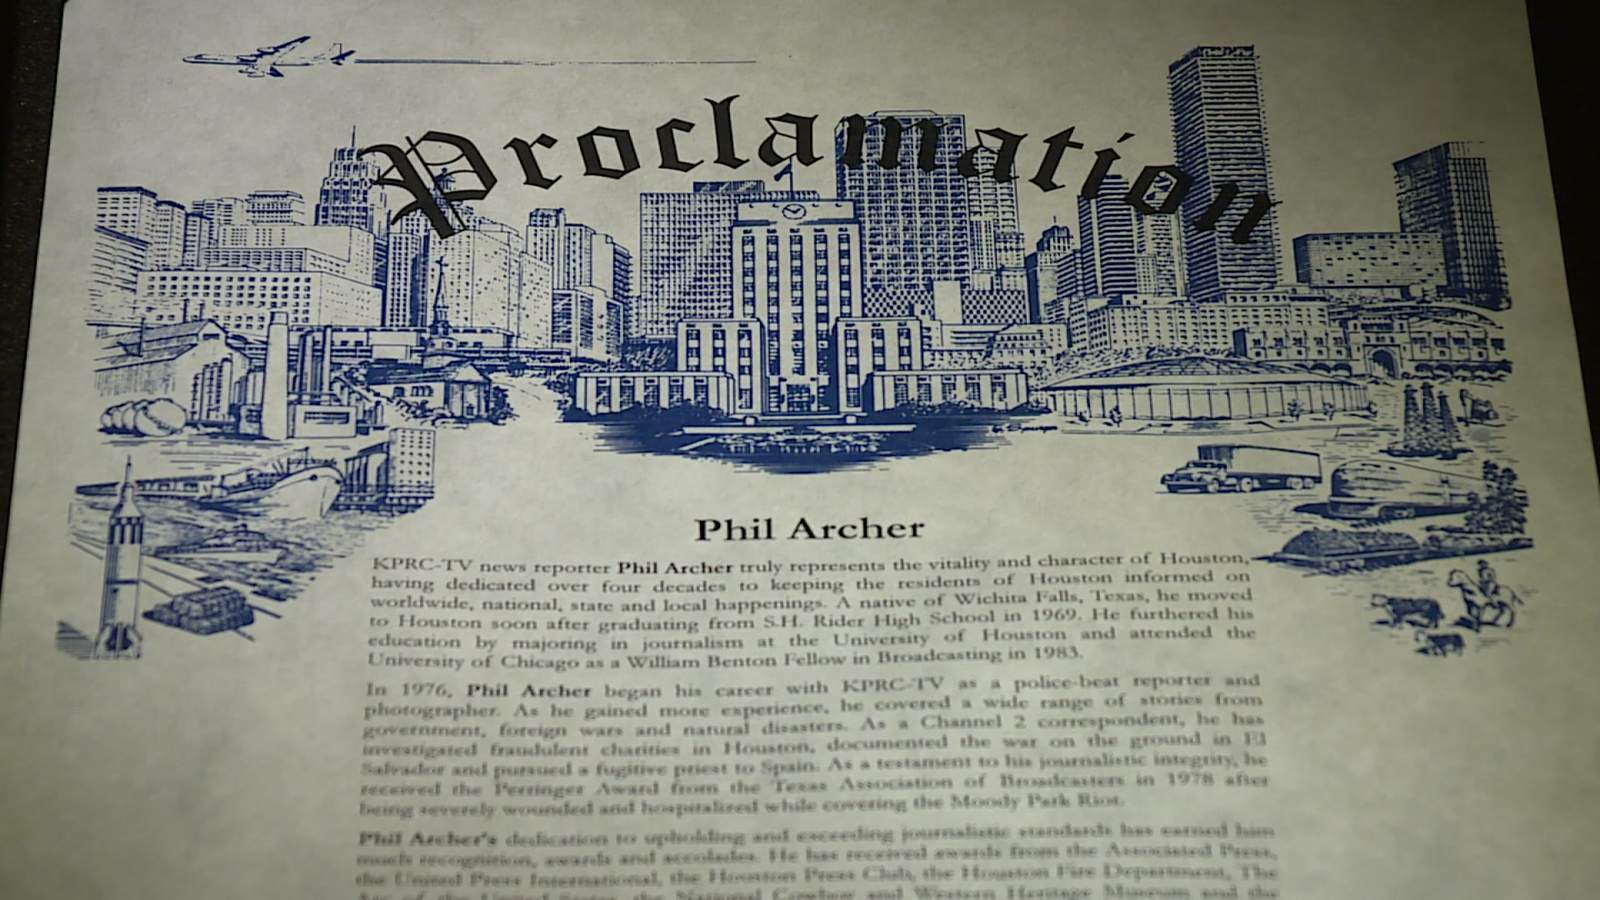 Phil Archer Day declared in Houston